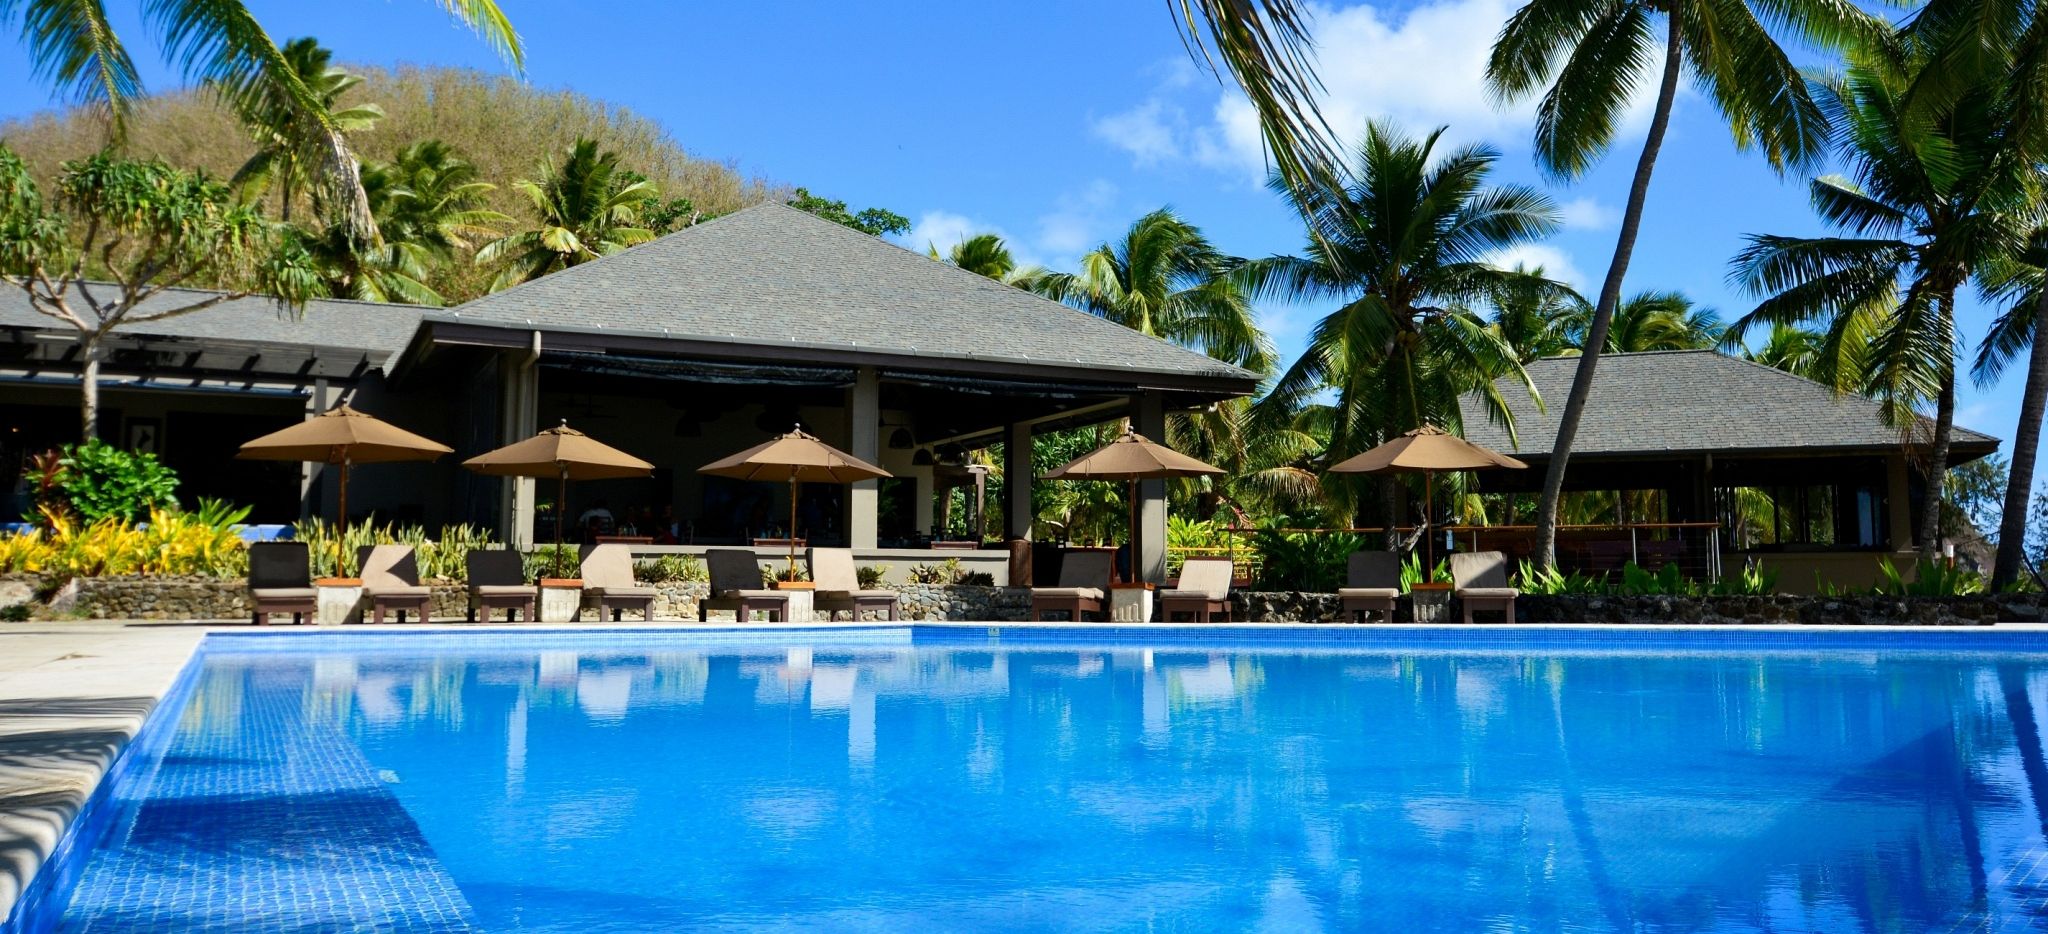 Hauptgebäude und Pool des Hotels Yasawa, Fiji